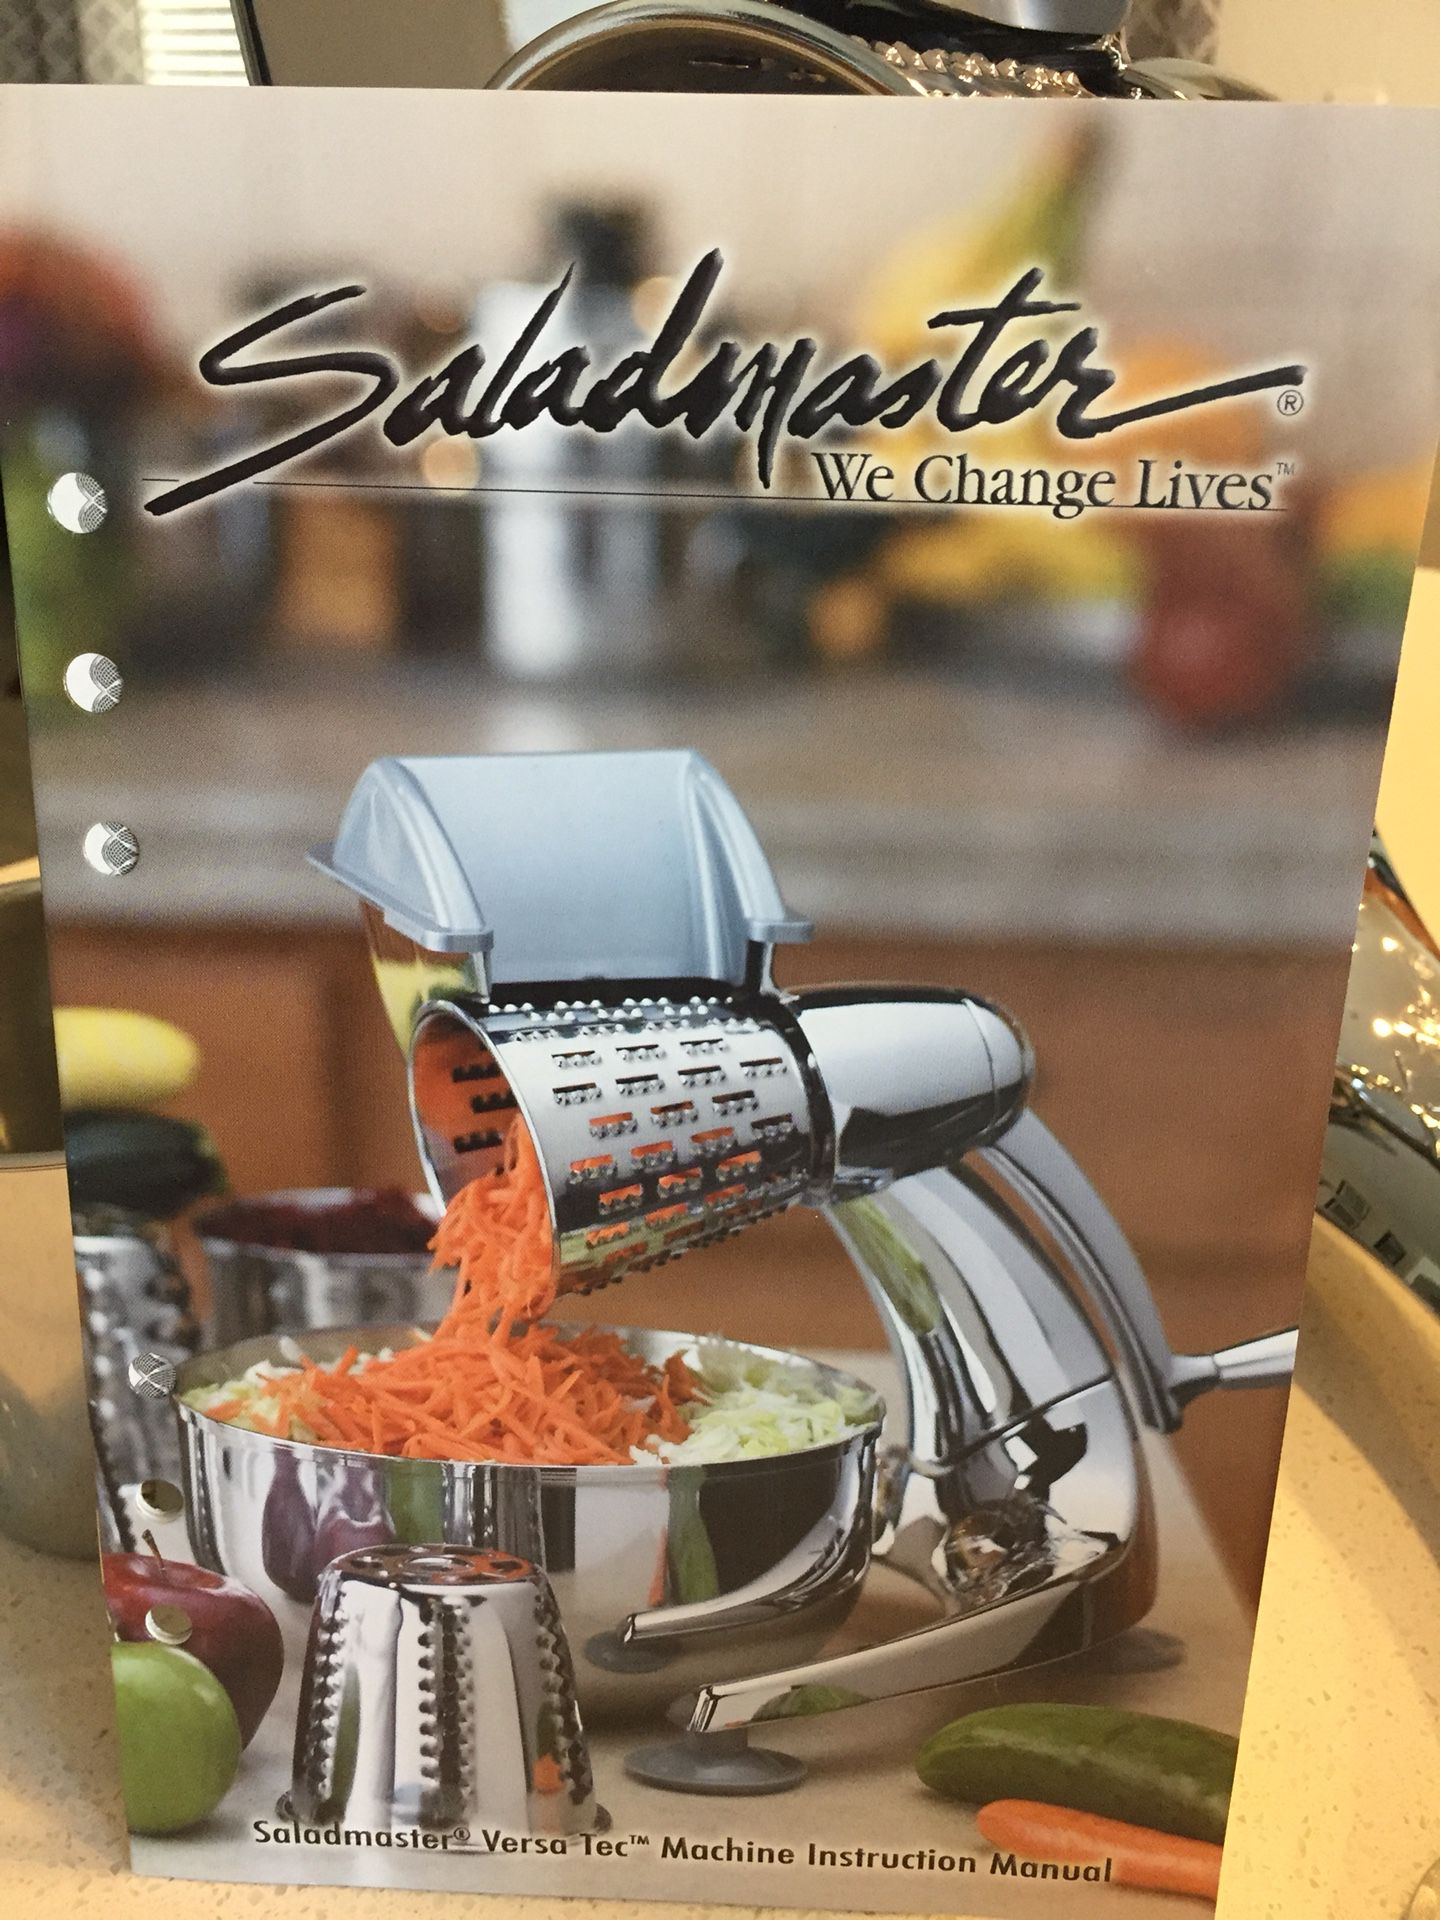 Saladmaster Food Processor/Shredder for Sale in Mesa, AZ - OfferUp